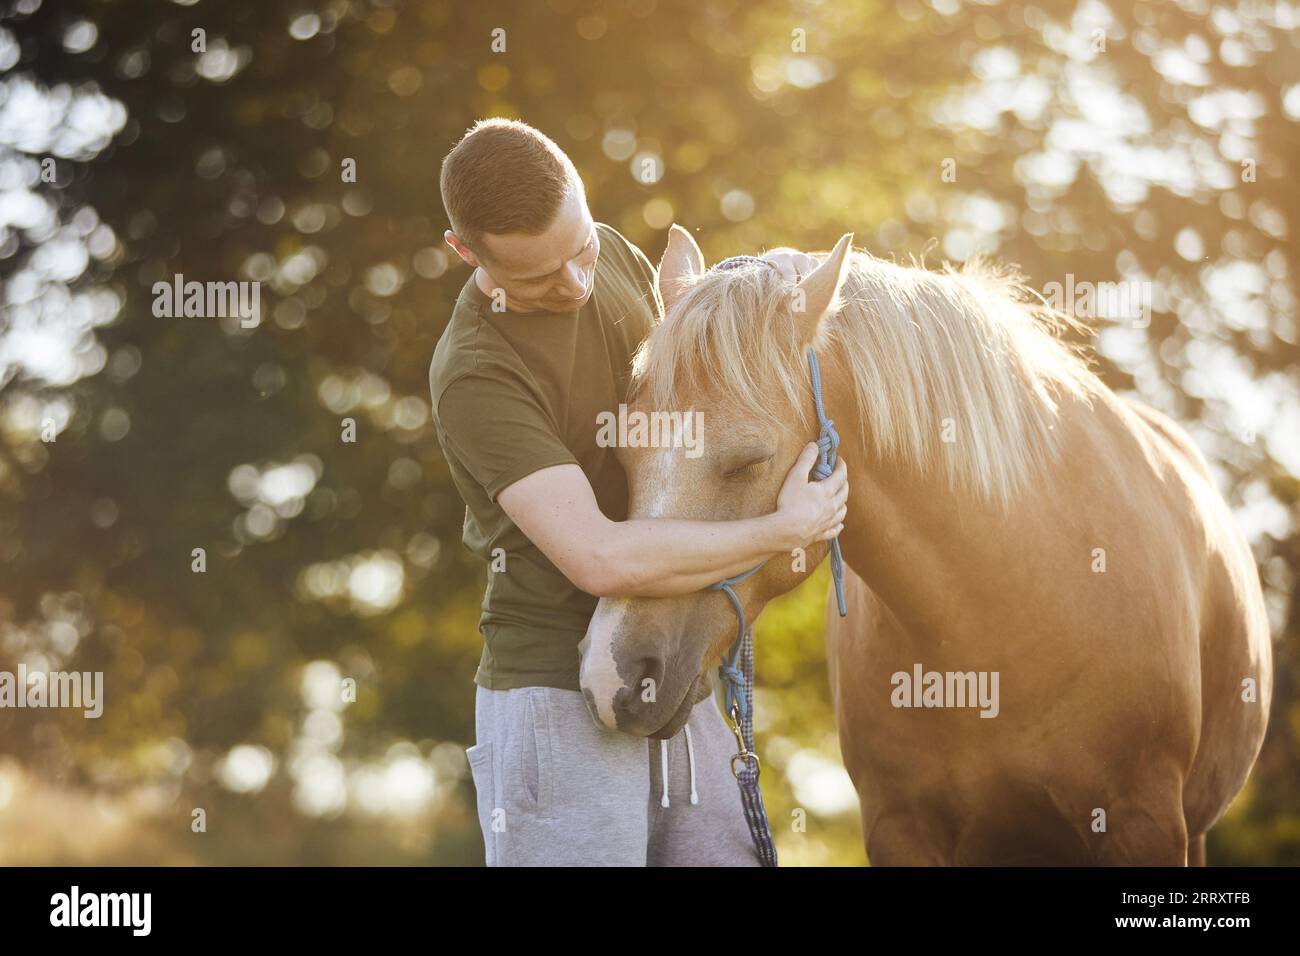 L'homme embrasse le cheval theraphy. Thèmes hippothérapie, soins et amitié entre les personnes et les animaux. Banque D'Images